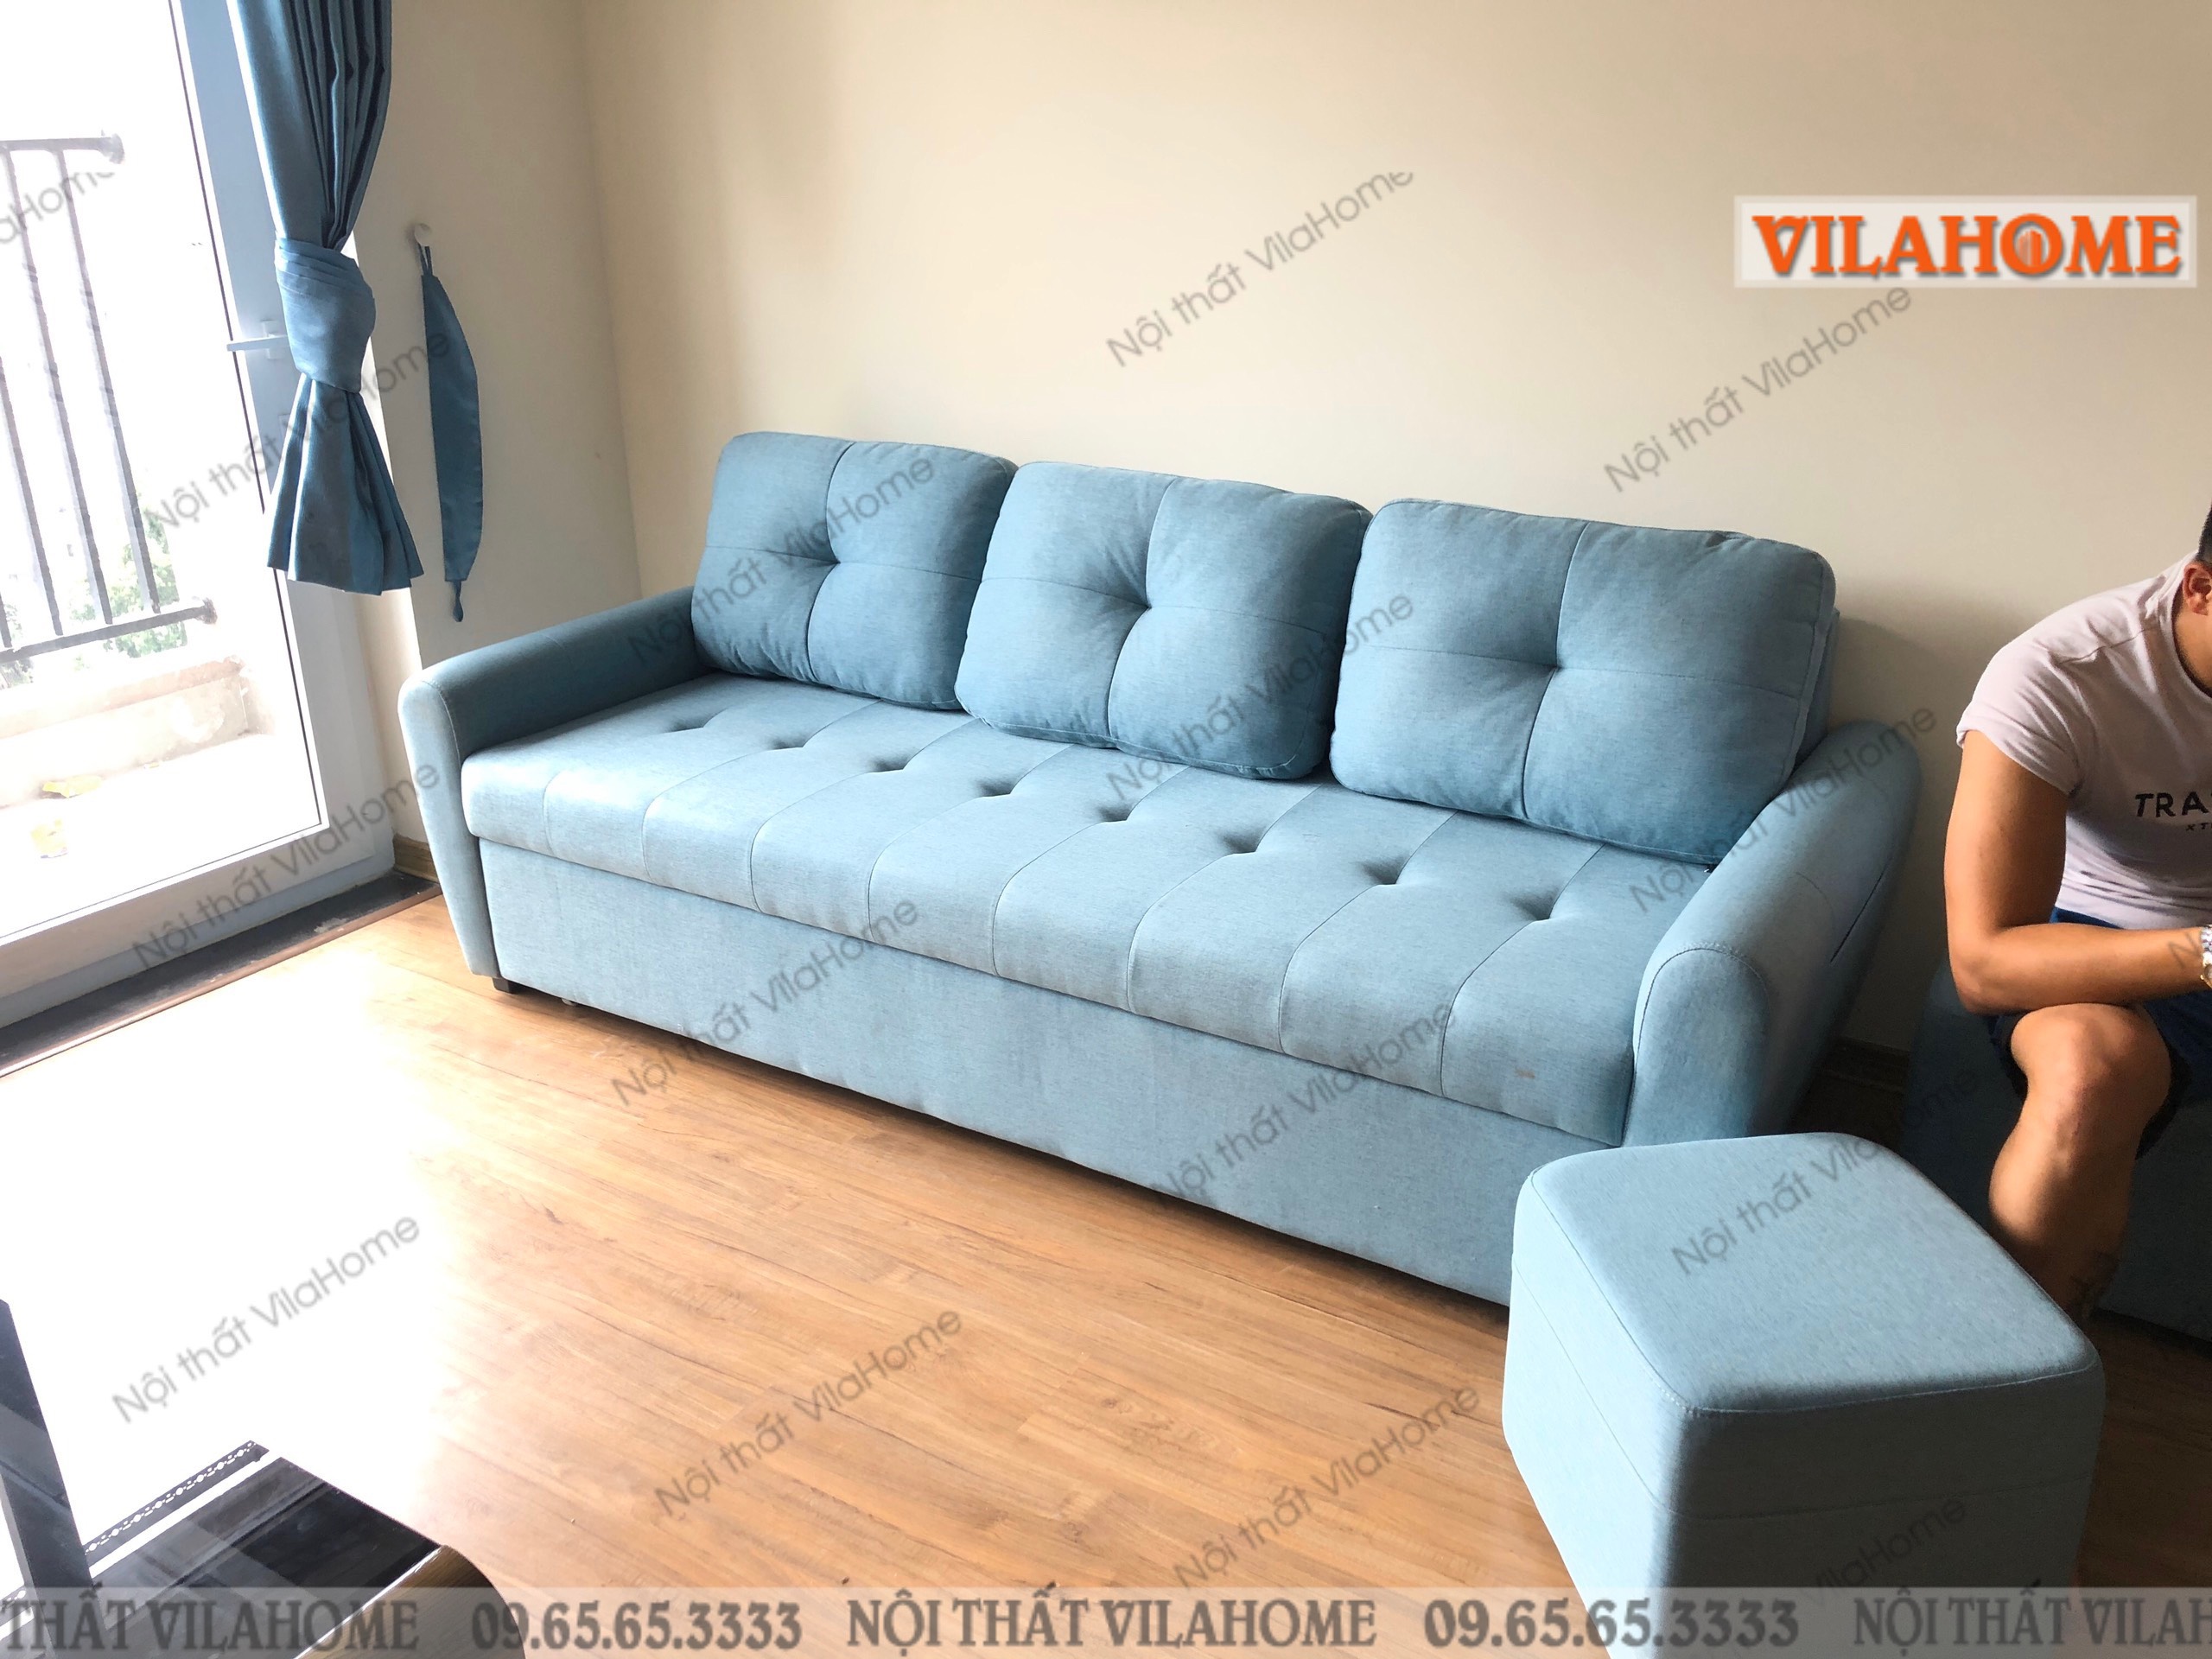 Hình ảnh thực tế mẫu sofa giường VilaHome bàn giao cho khách